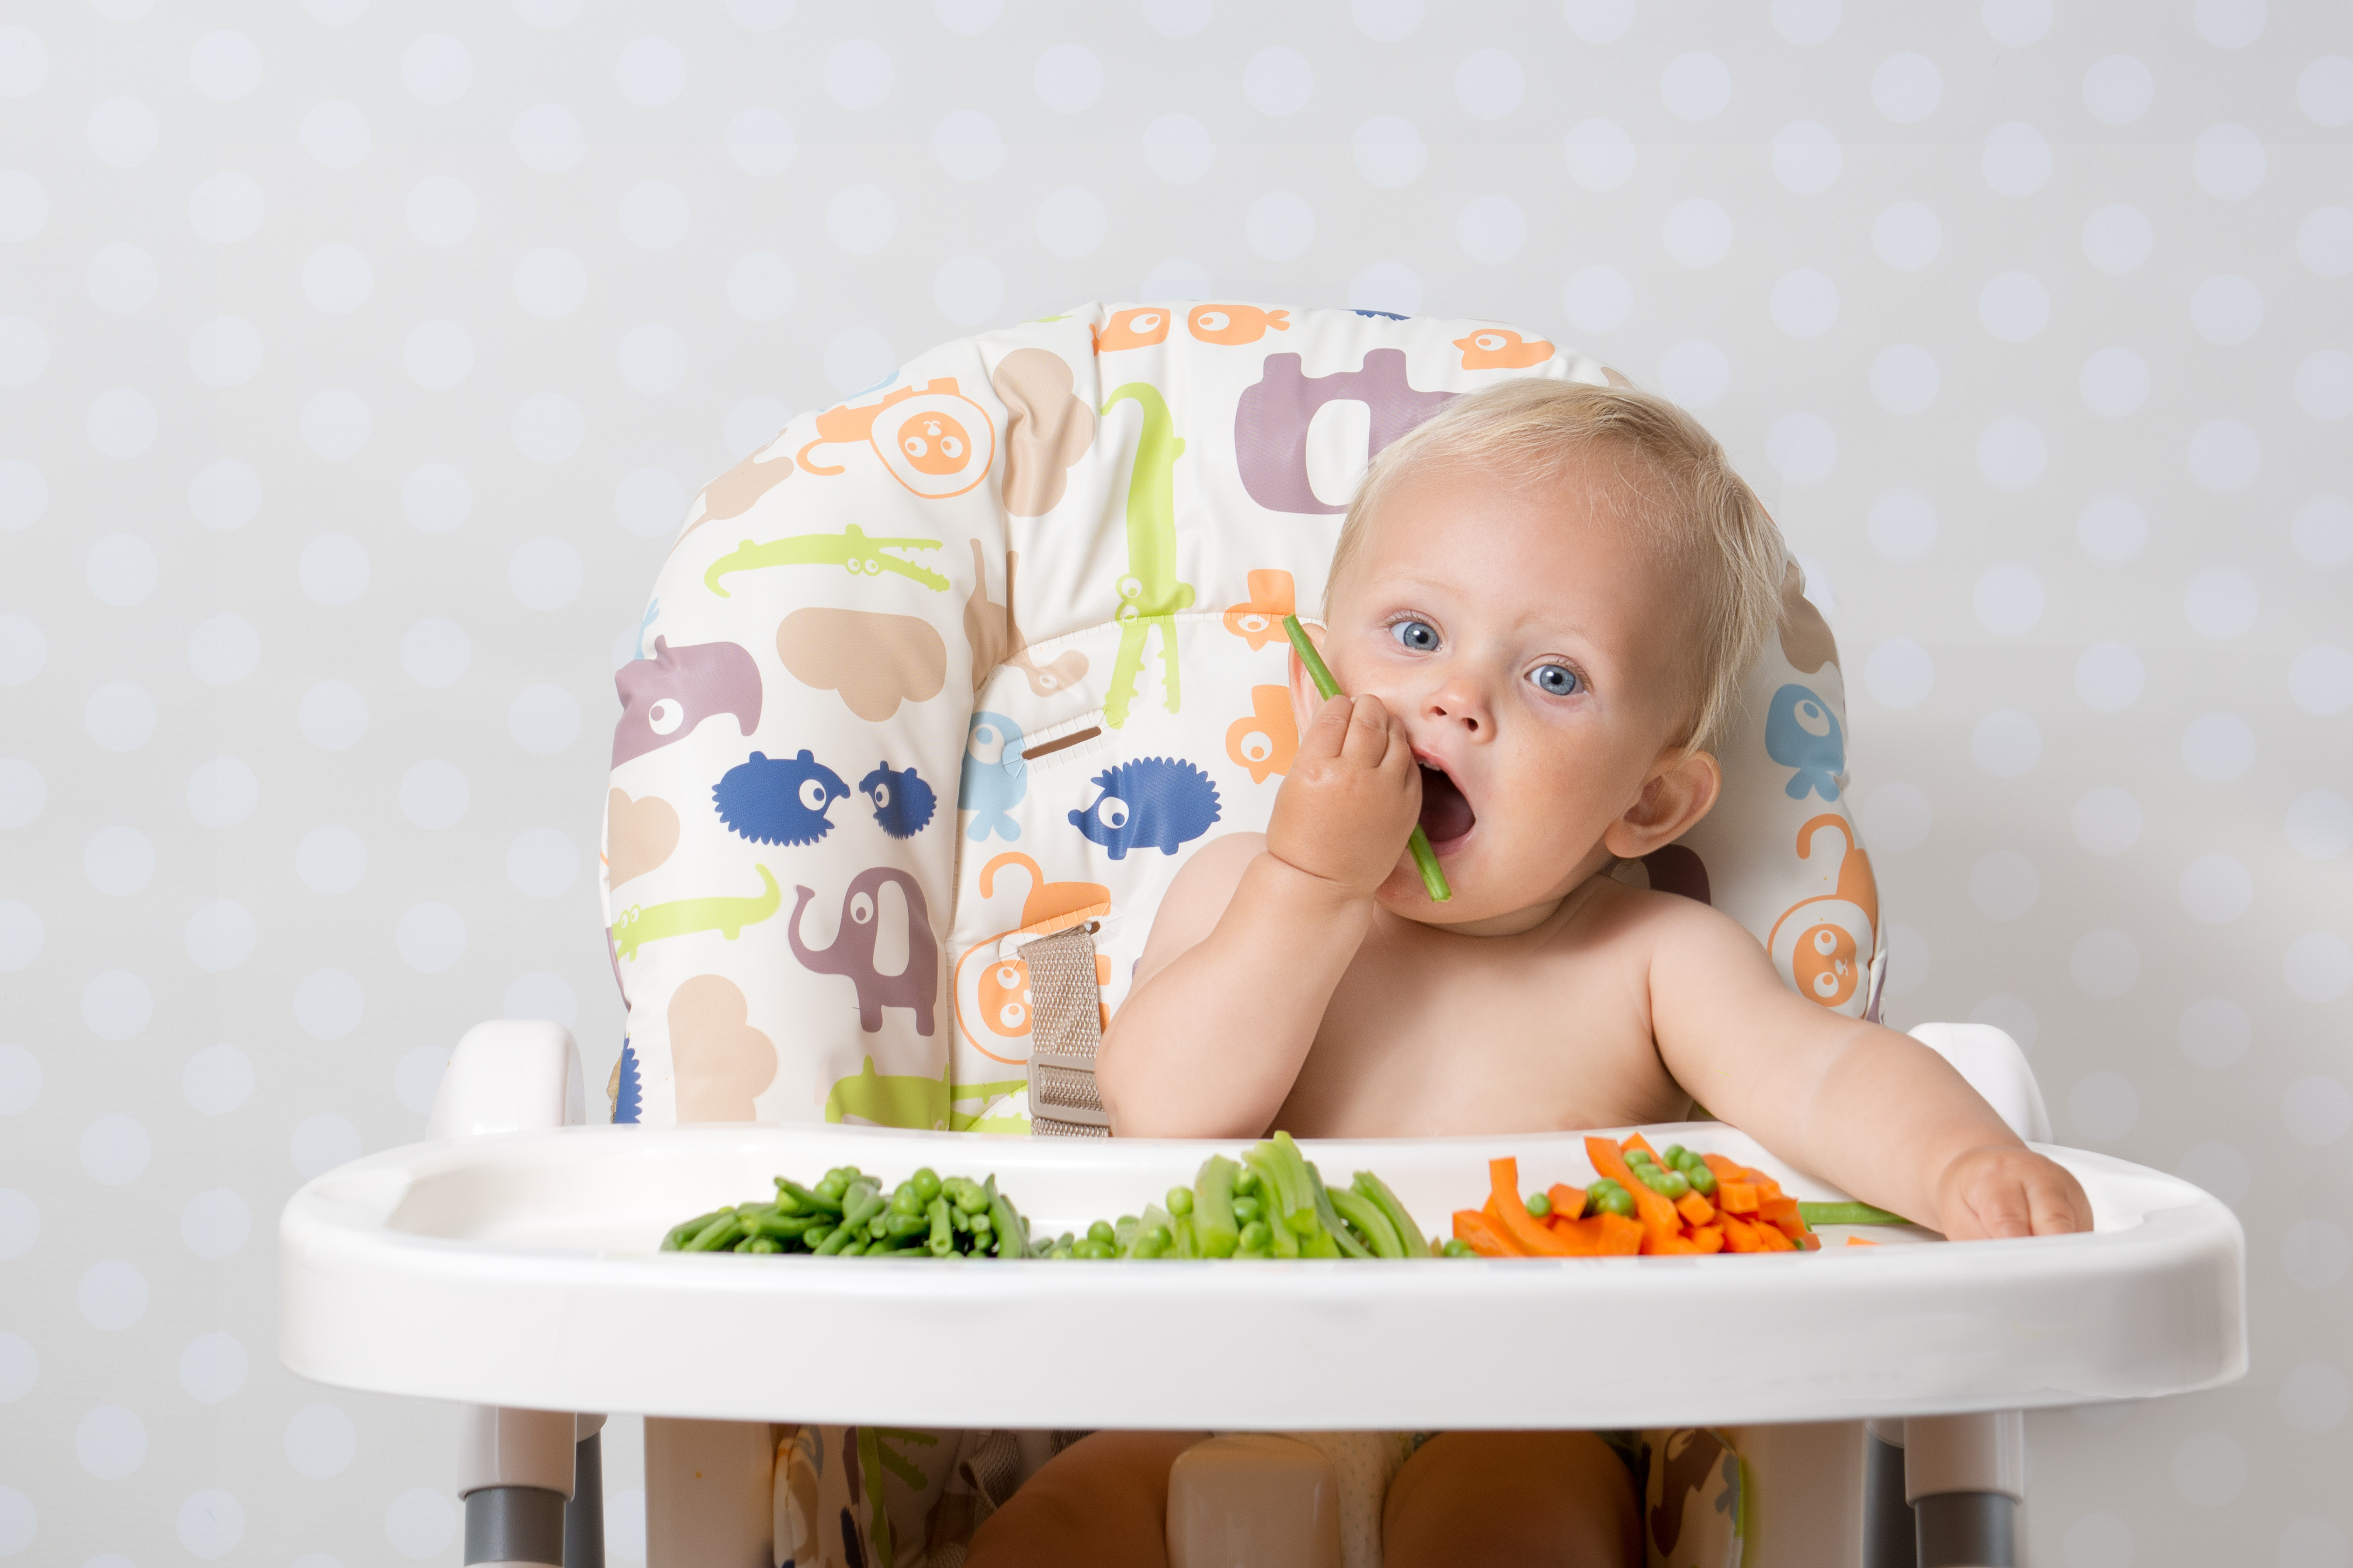 Корисні продукти для дитини: чим годувати дитину, щоб він ріс здоровим  